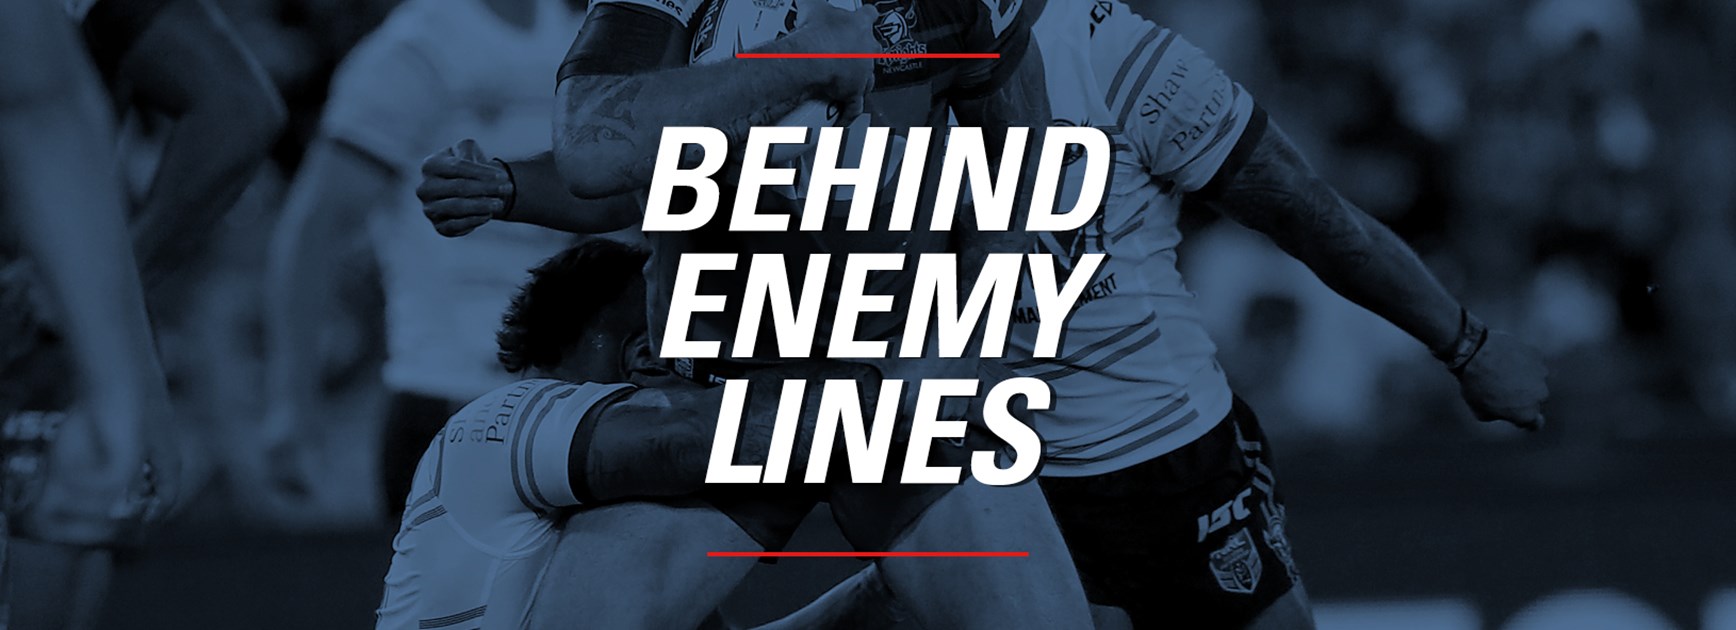 Behind enemy lines: Round 5